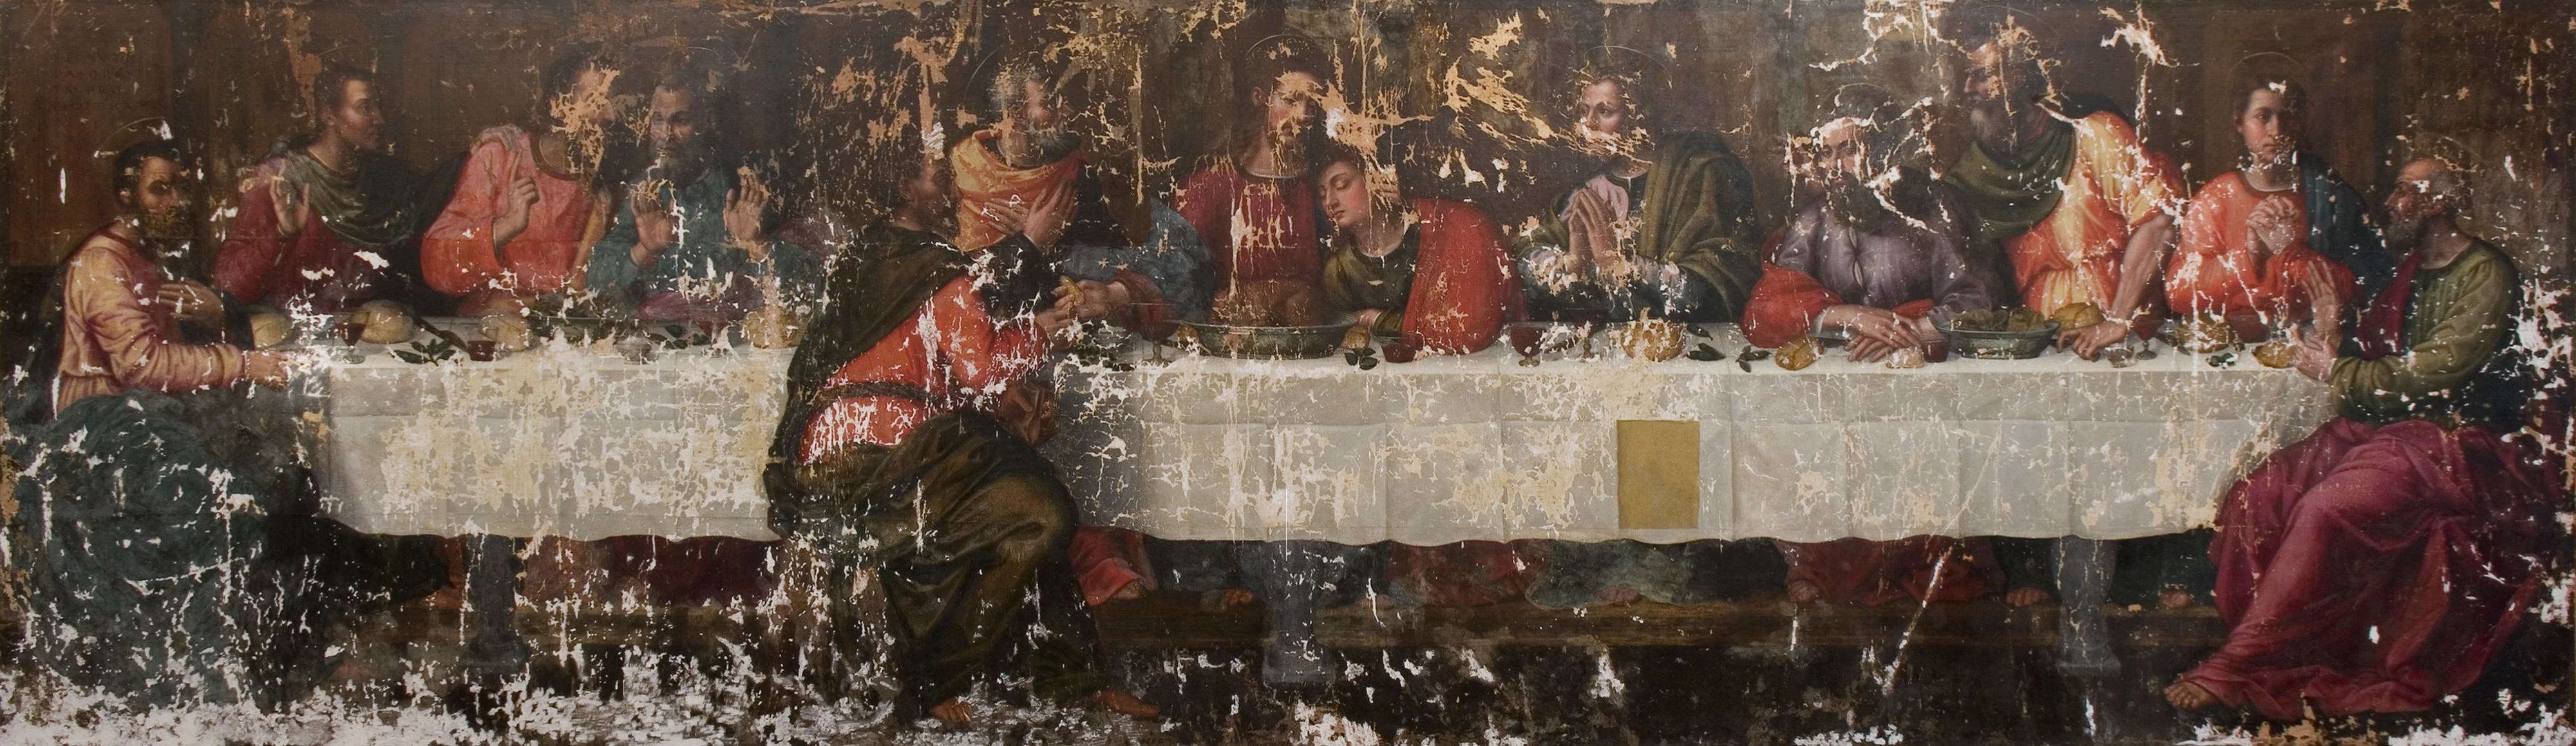 The Last Supper, Plautilla Nelli